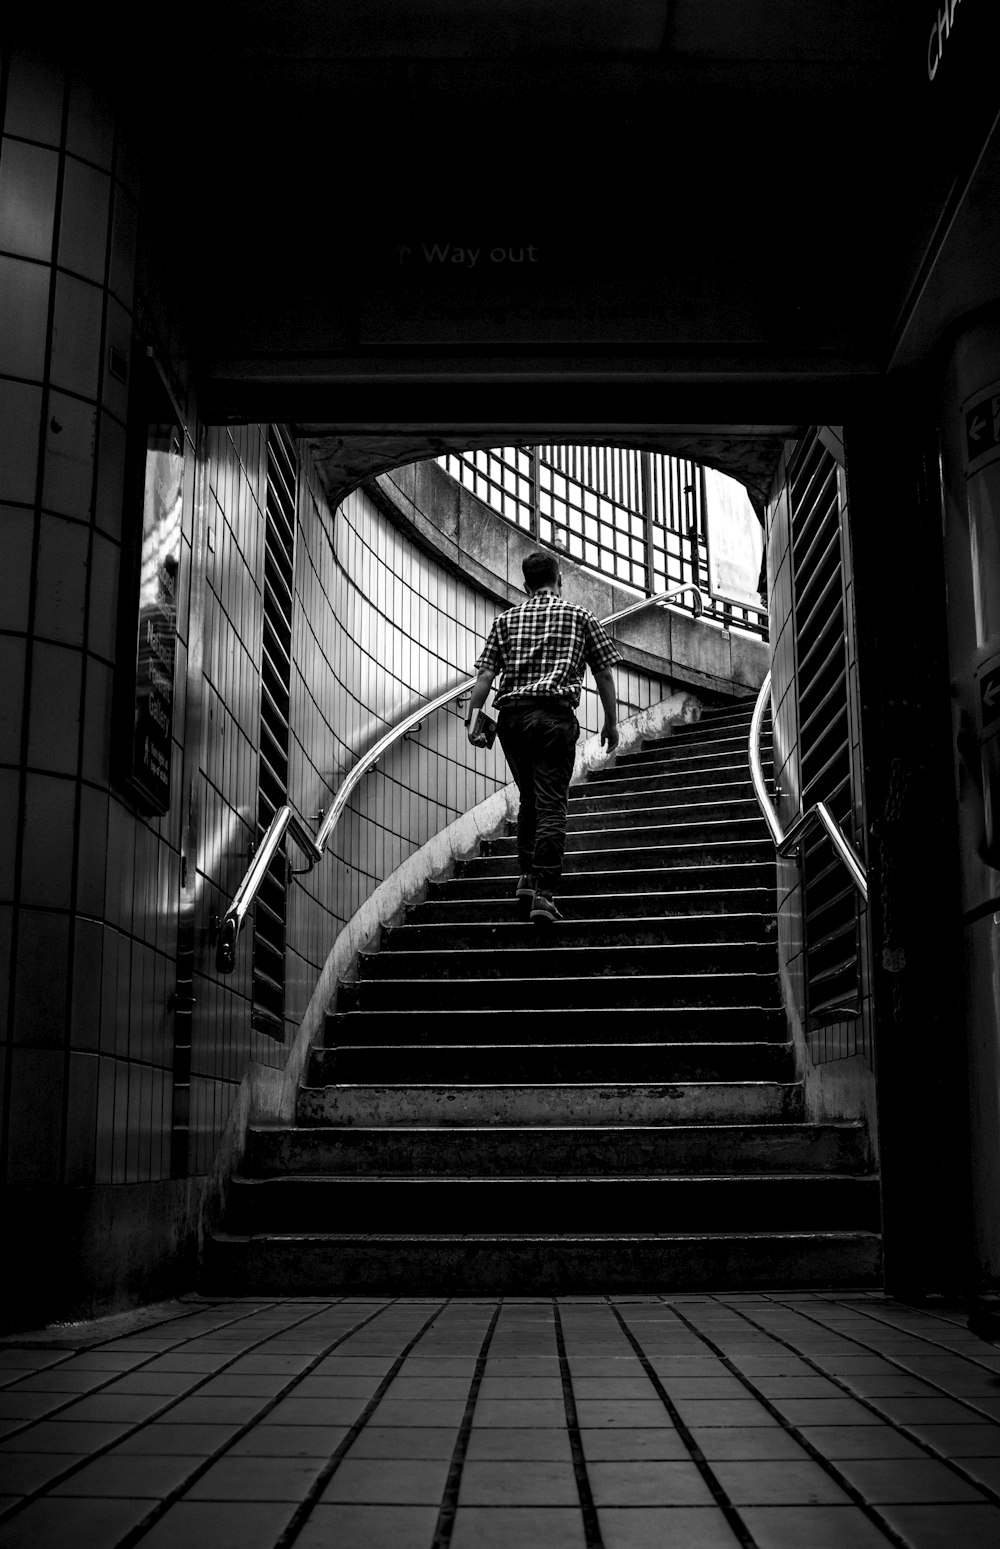 Foto in scala di grigi di un uomo che sale le scale